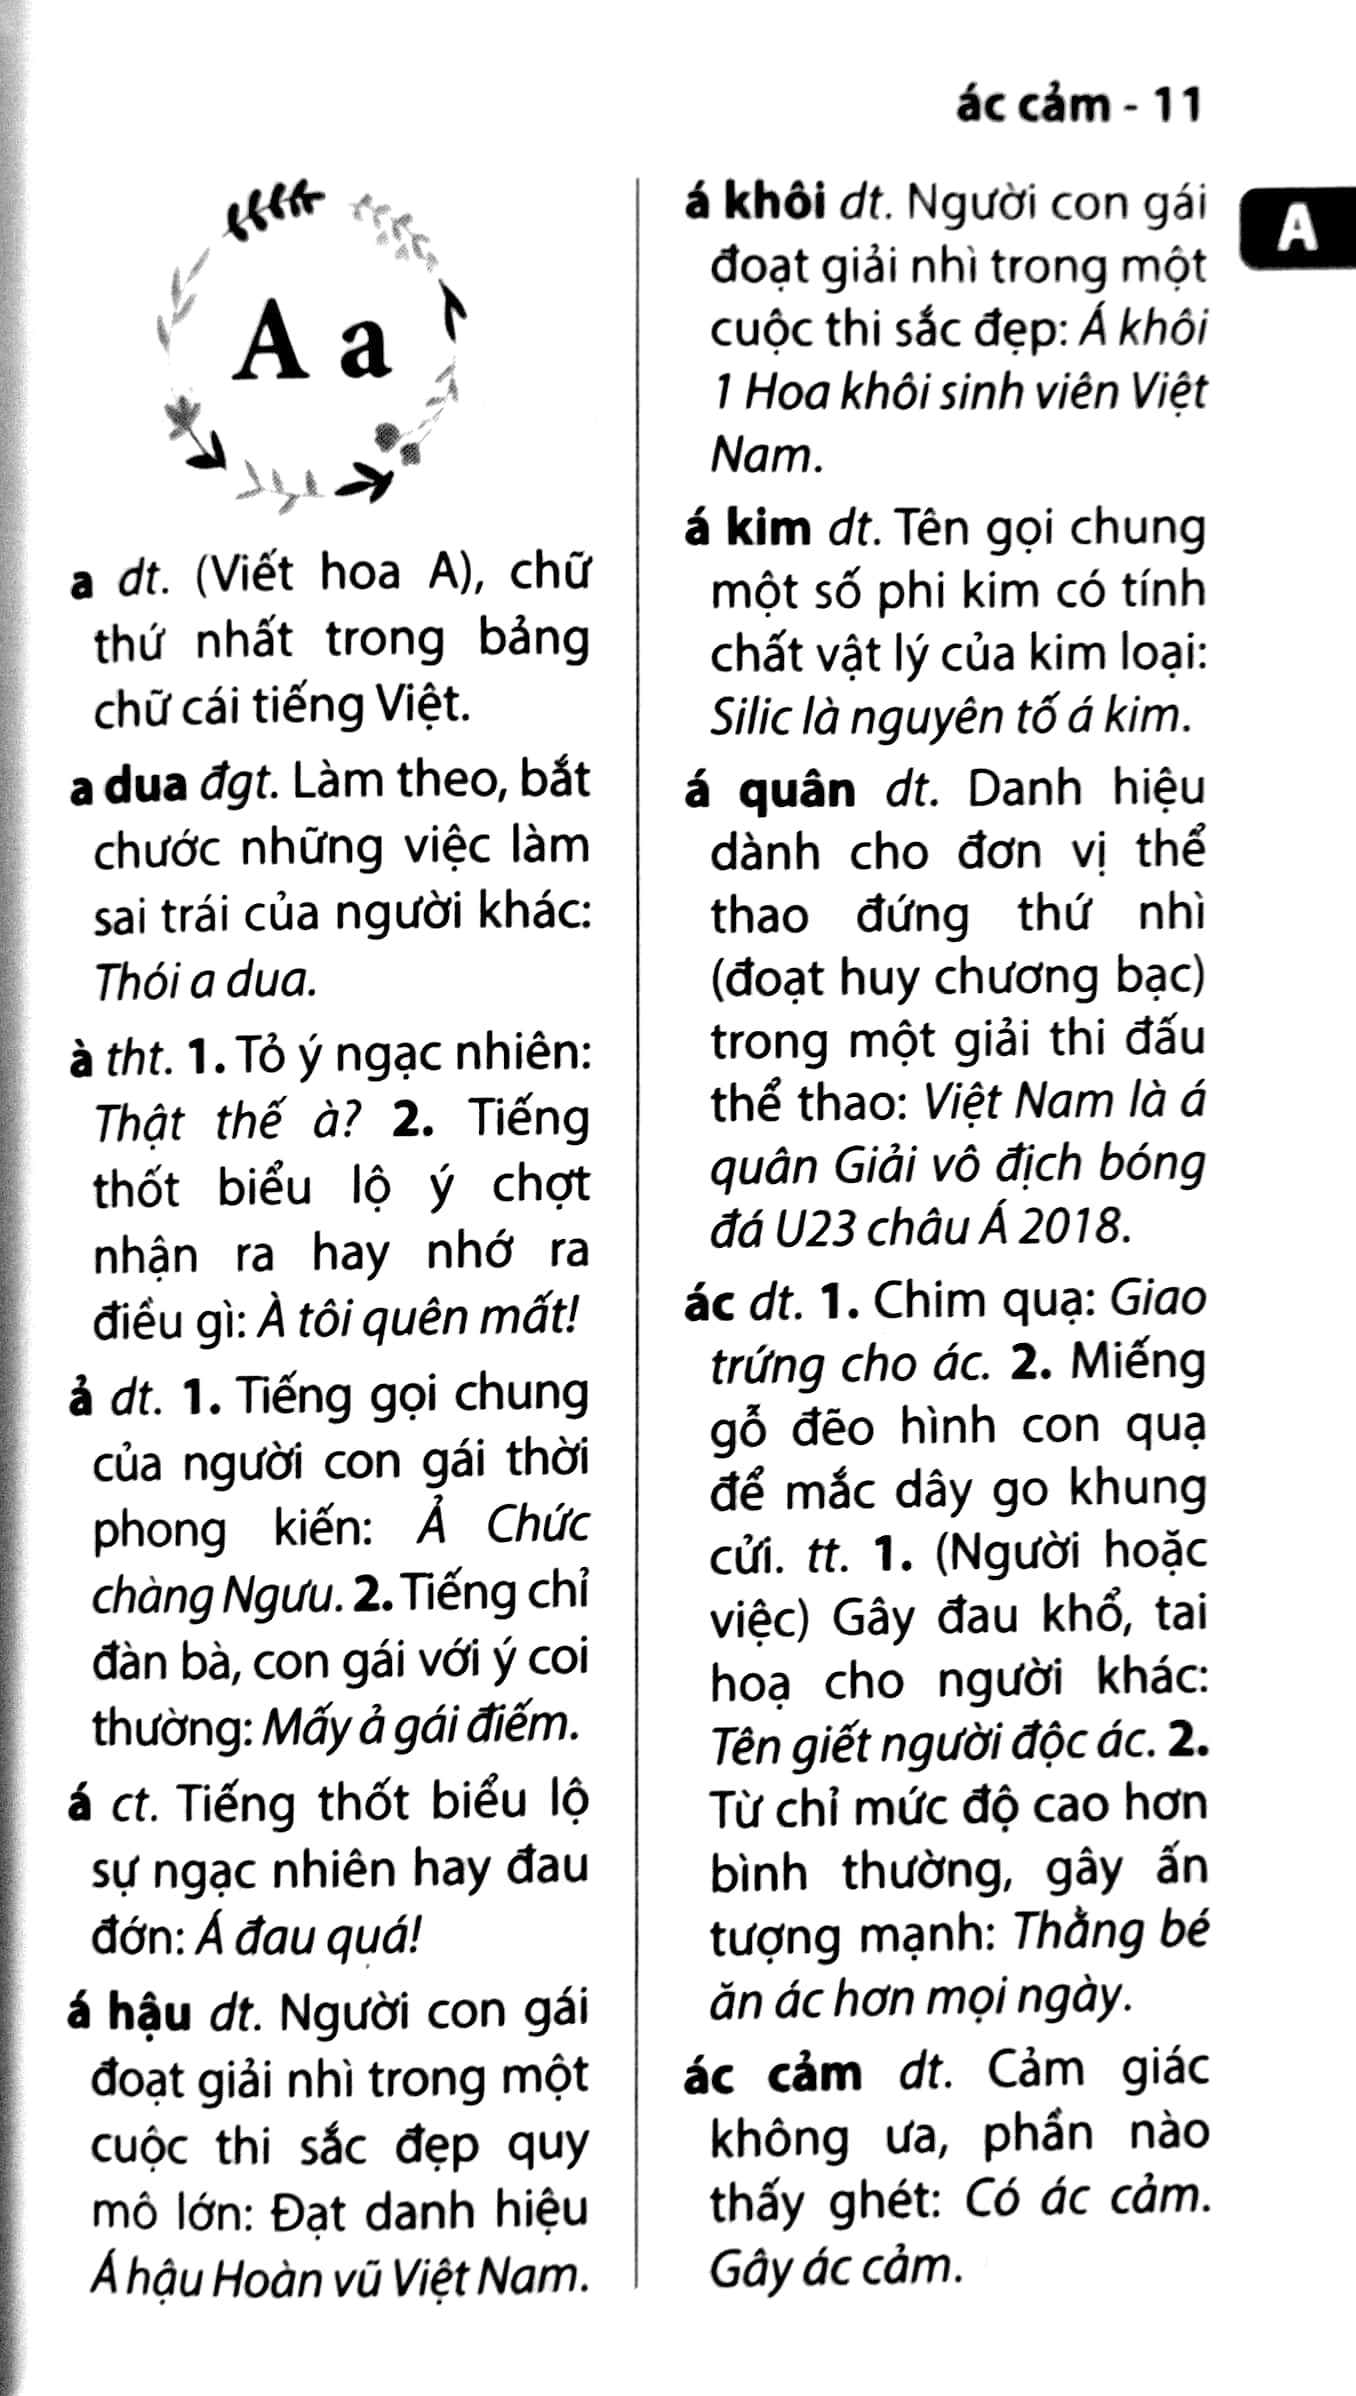 Từ Điển Tiếng Việt Dành Cho Học Sinh PDF